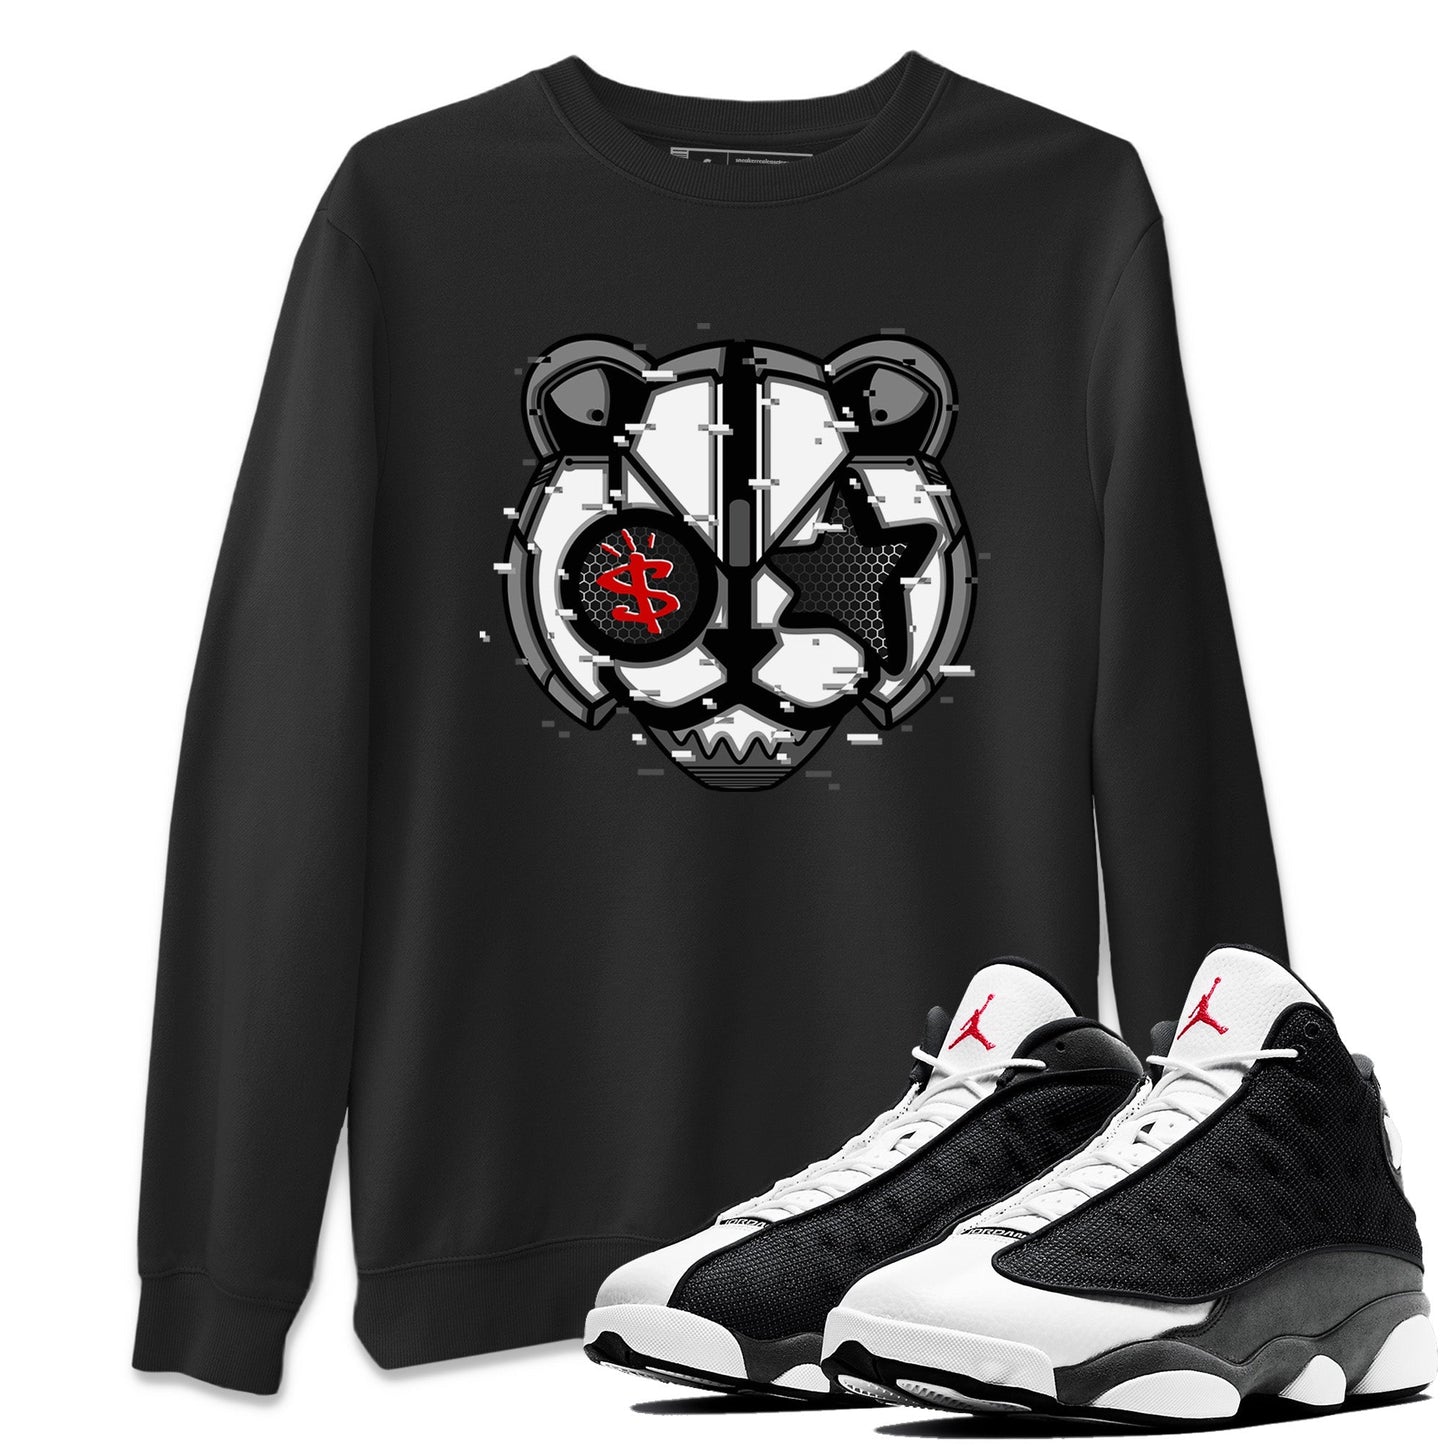 Air Jordan 13 Black Flint Sneaker Match Tees Digital Cat Face Streetwear Sneaker Shirt Air Jordan 13 Retro Black Flint Sneaker Release Tees Unisex Shirts Black 1